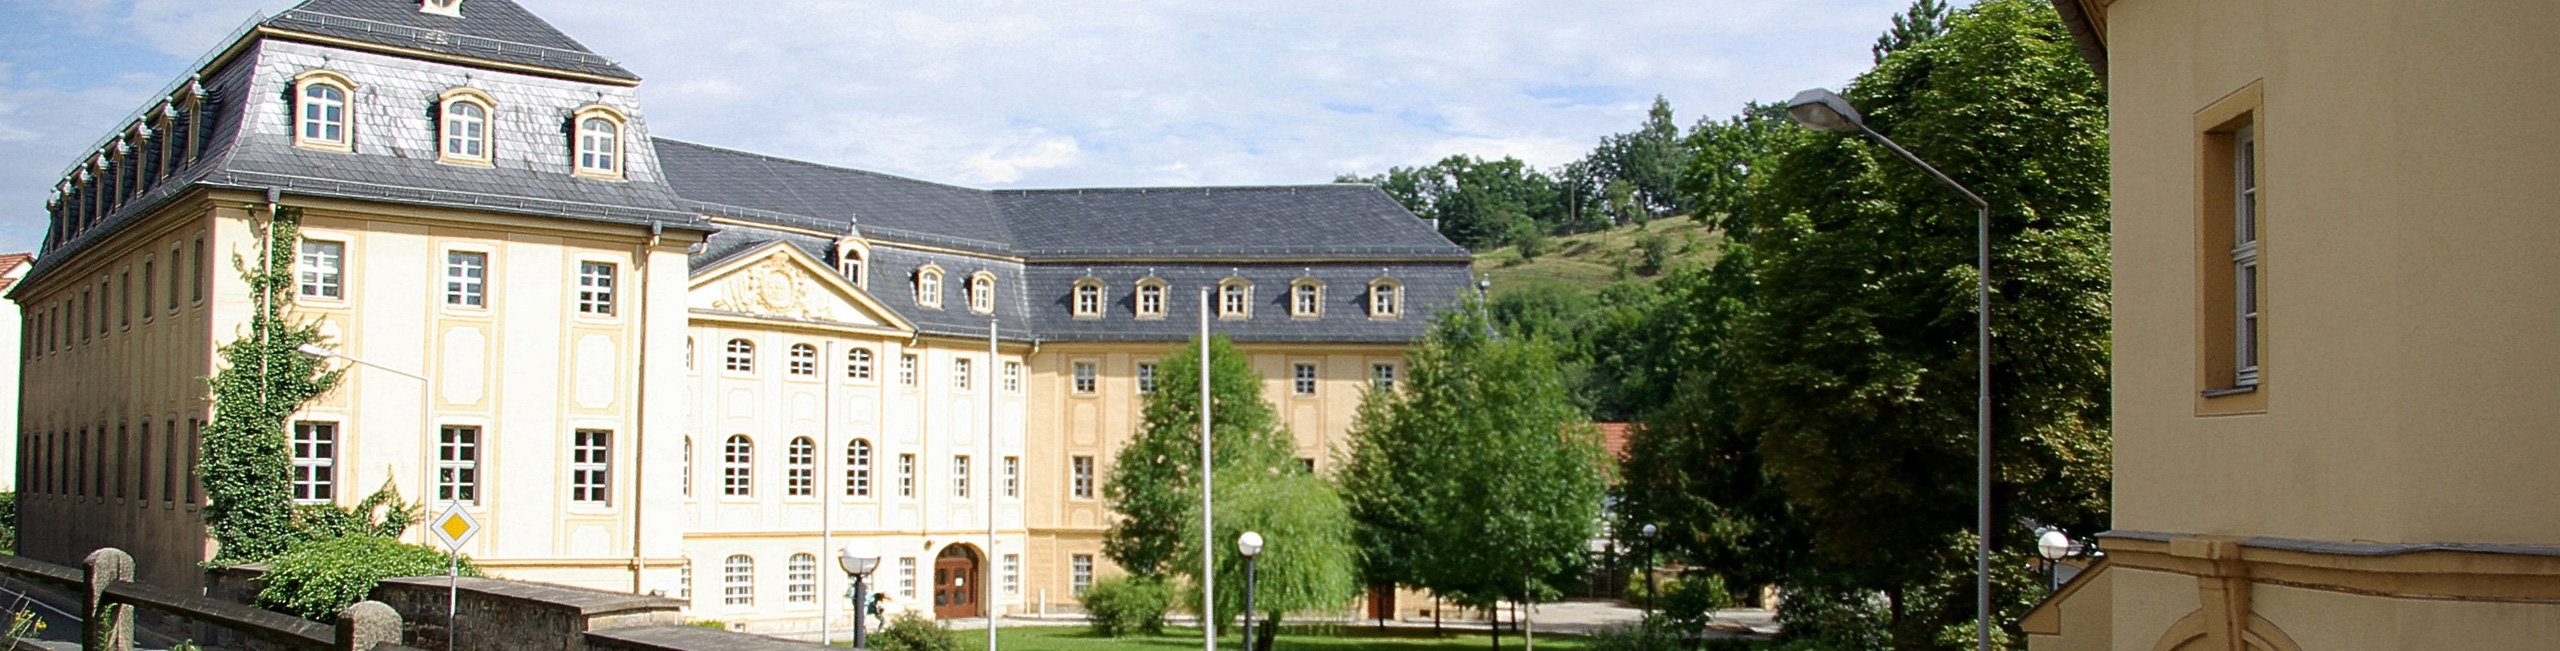 Gebäude des Thüringer Rechnungshofes